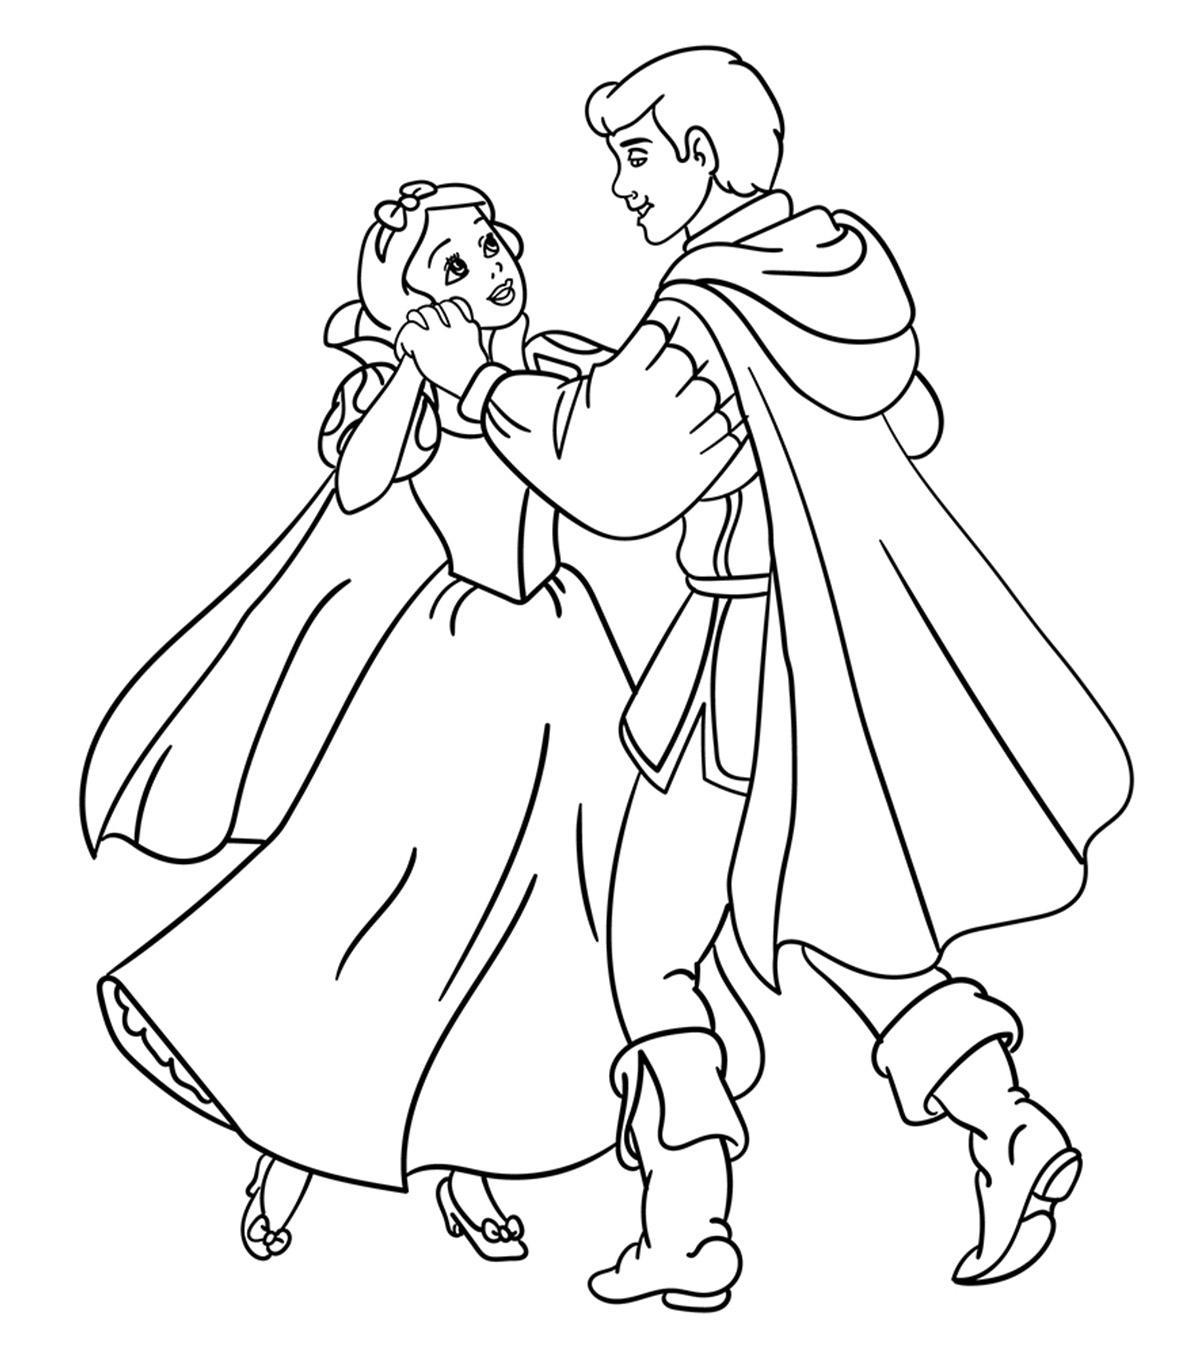 Tranh tô màu công chúa bạch tuyết và hoàng tử